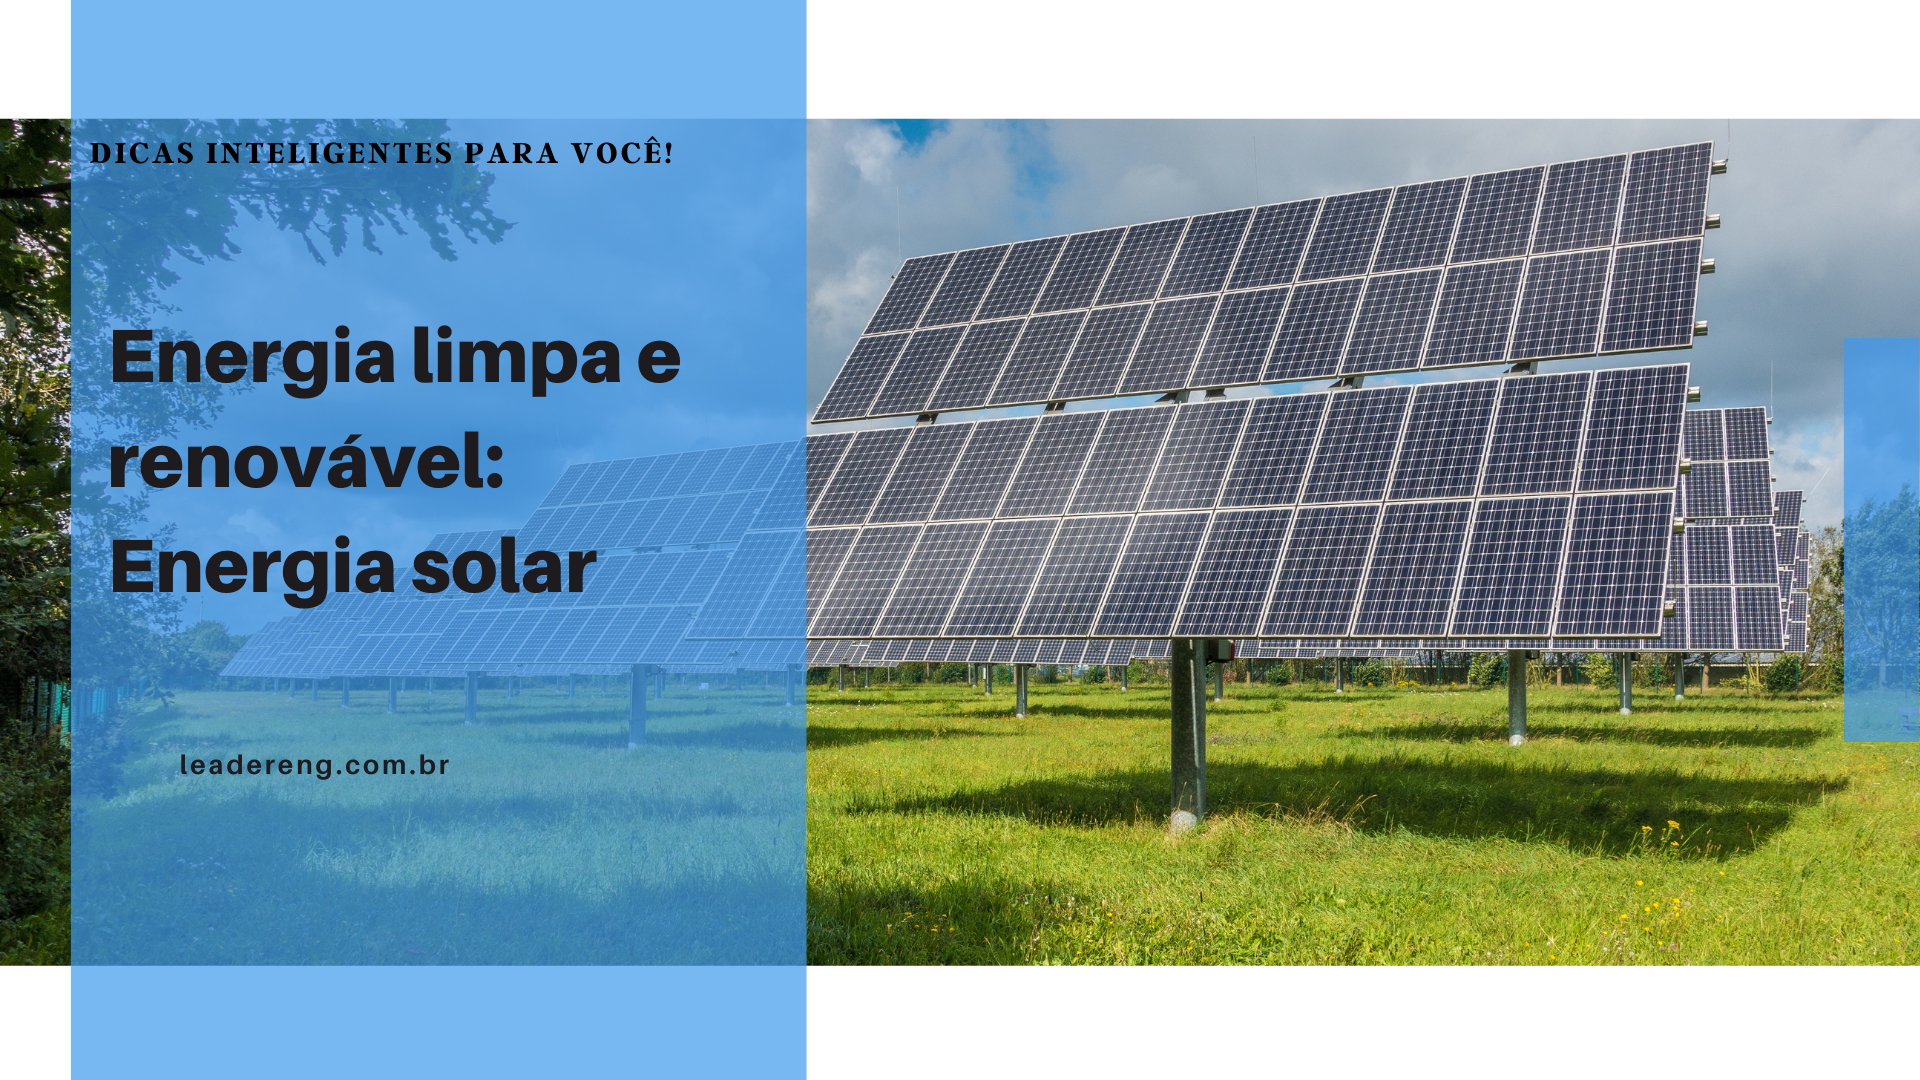 E4 Soluções em Energia no LinkedIn: #energia #sol #energiasolar  #energiarenovavel #desenvolvimento…